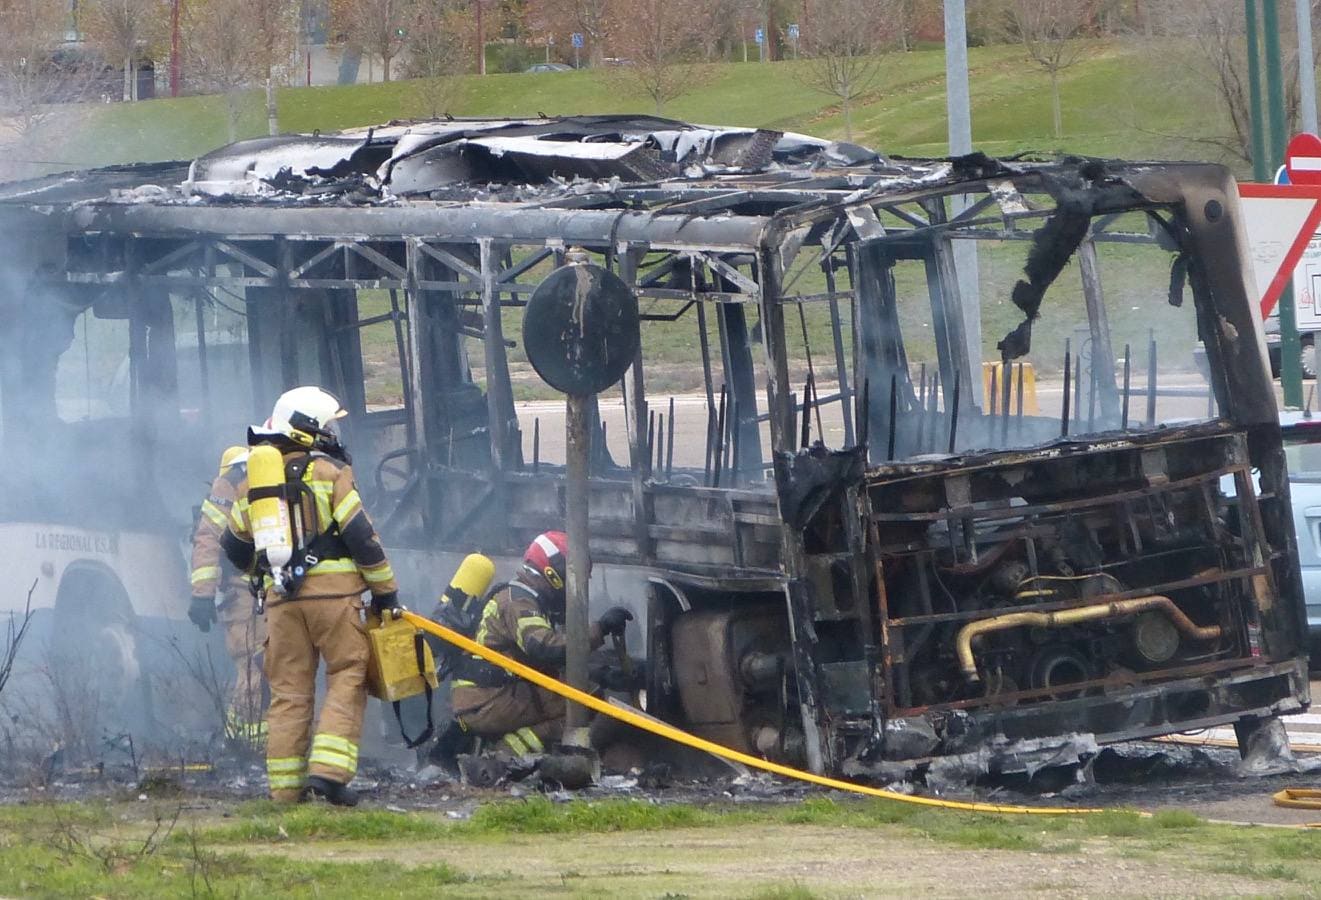 Los Bomberos de Valladolid han apagado las llamas que han devorado el autobús en las inmediaciones del estadio José Zorrila de Valladolid.